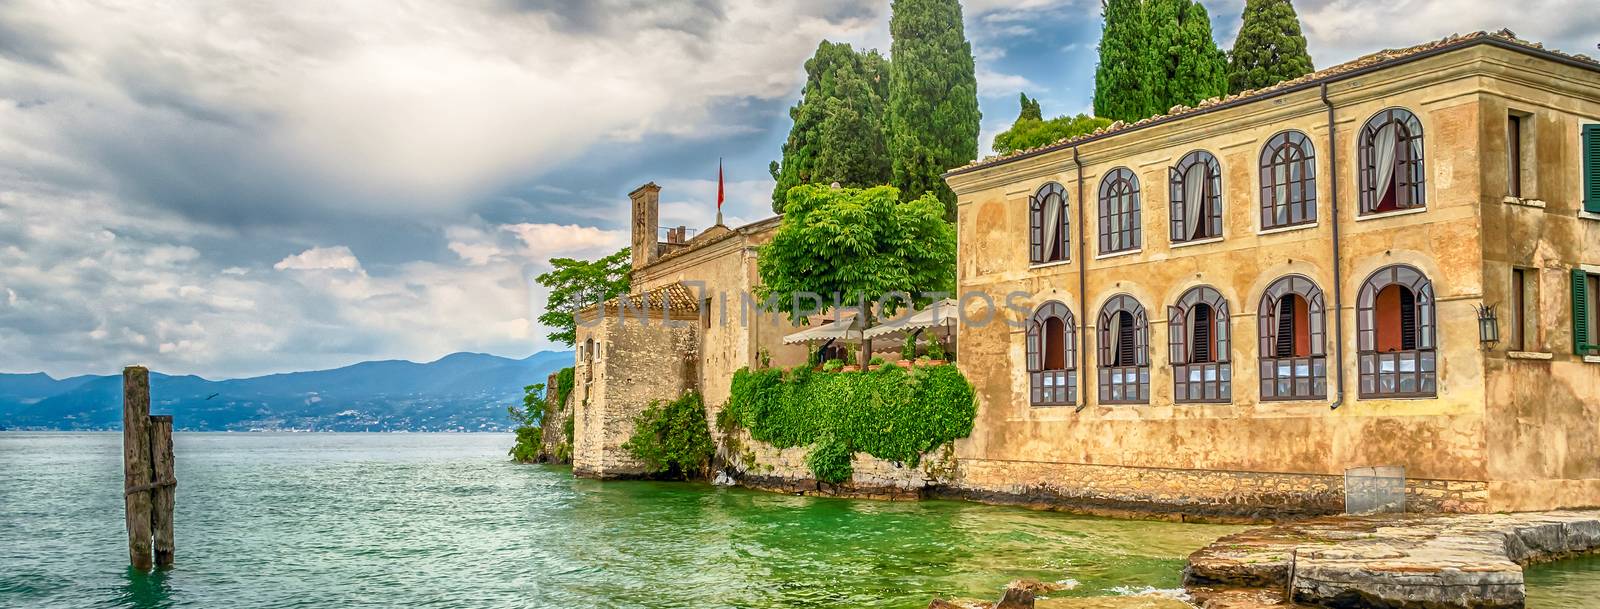 Lake Garda at Punta San Vigilio, Town of Garda, Italy by marcorubino